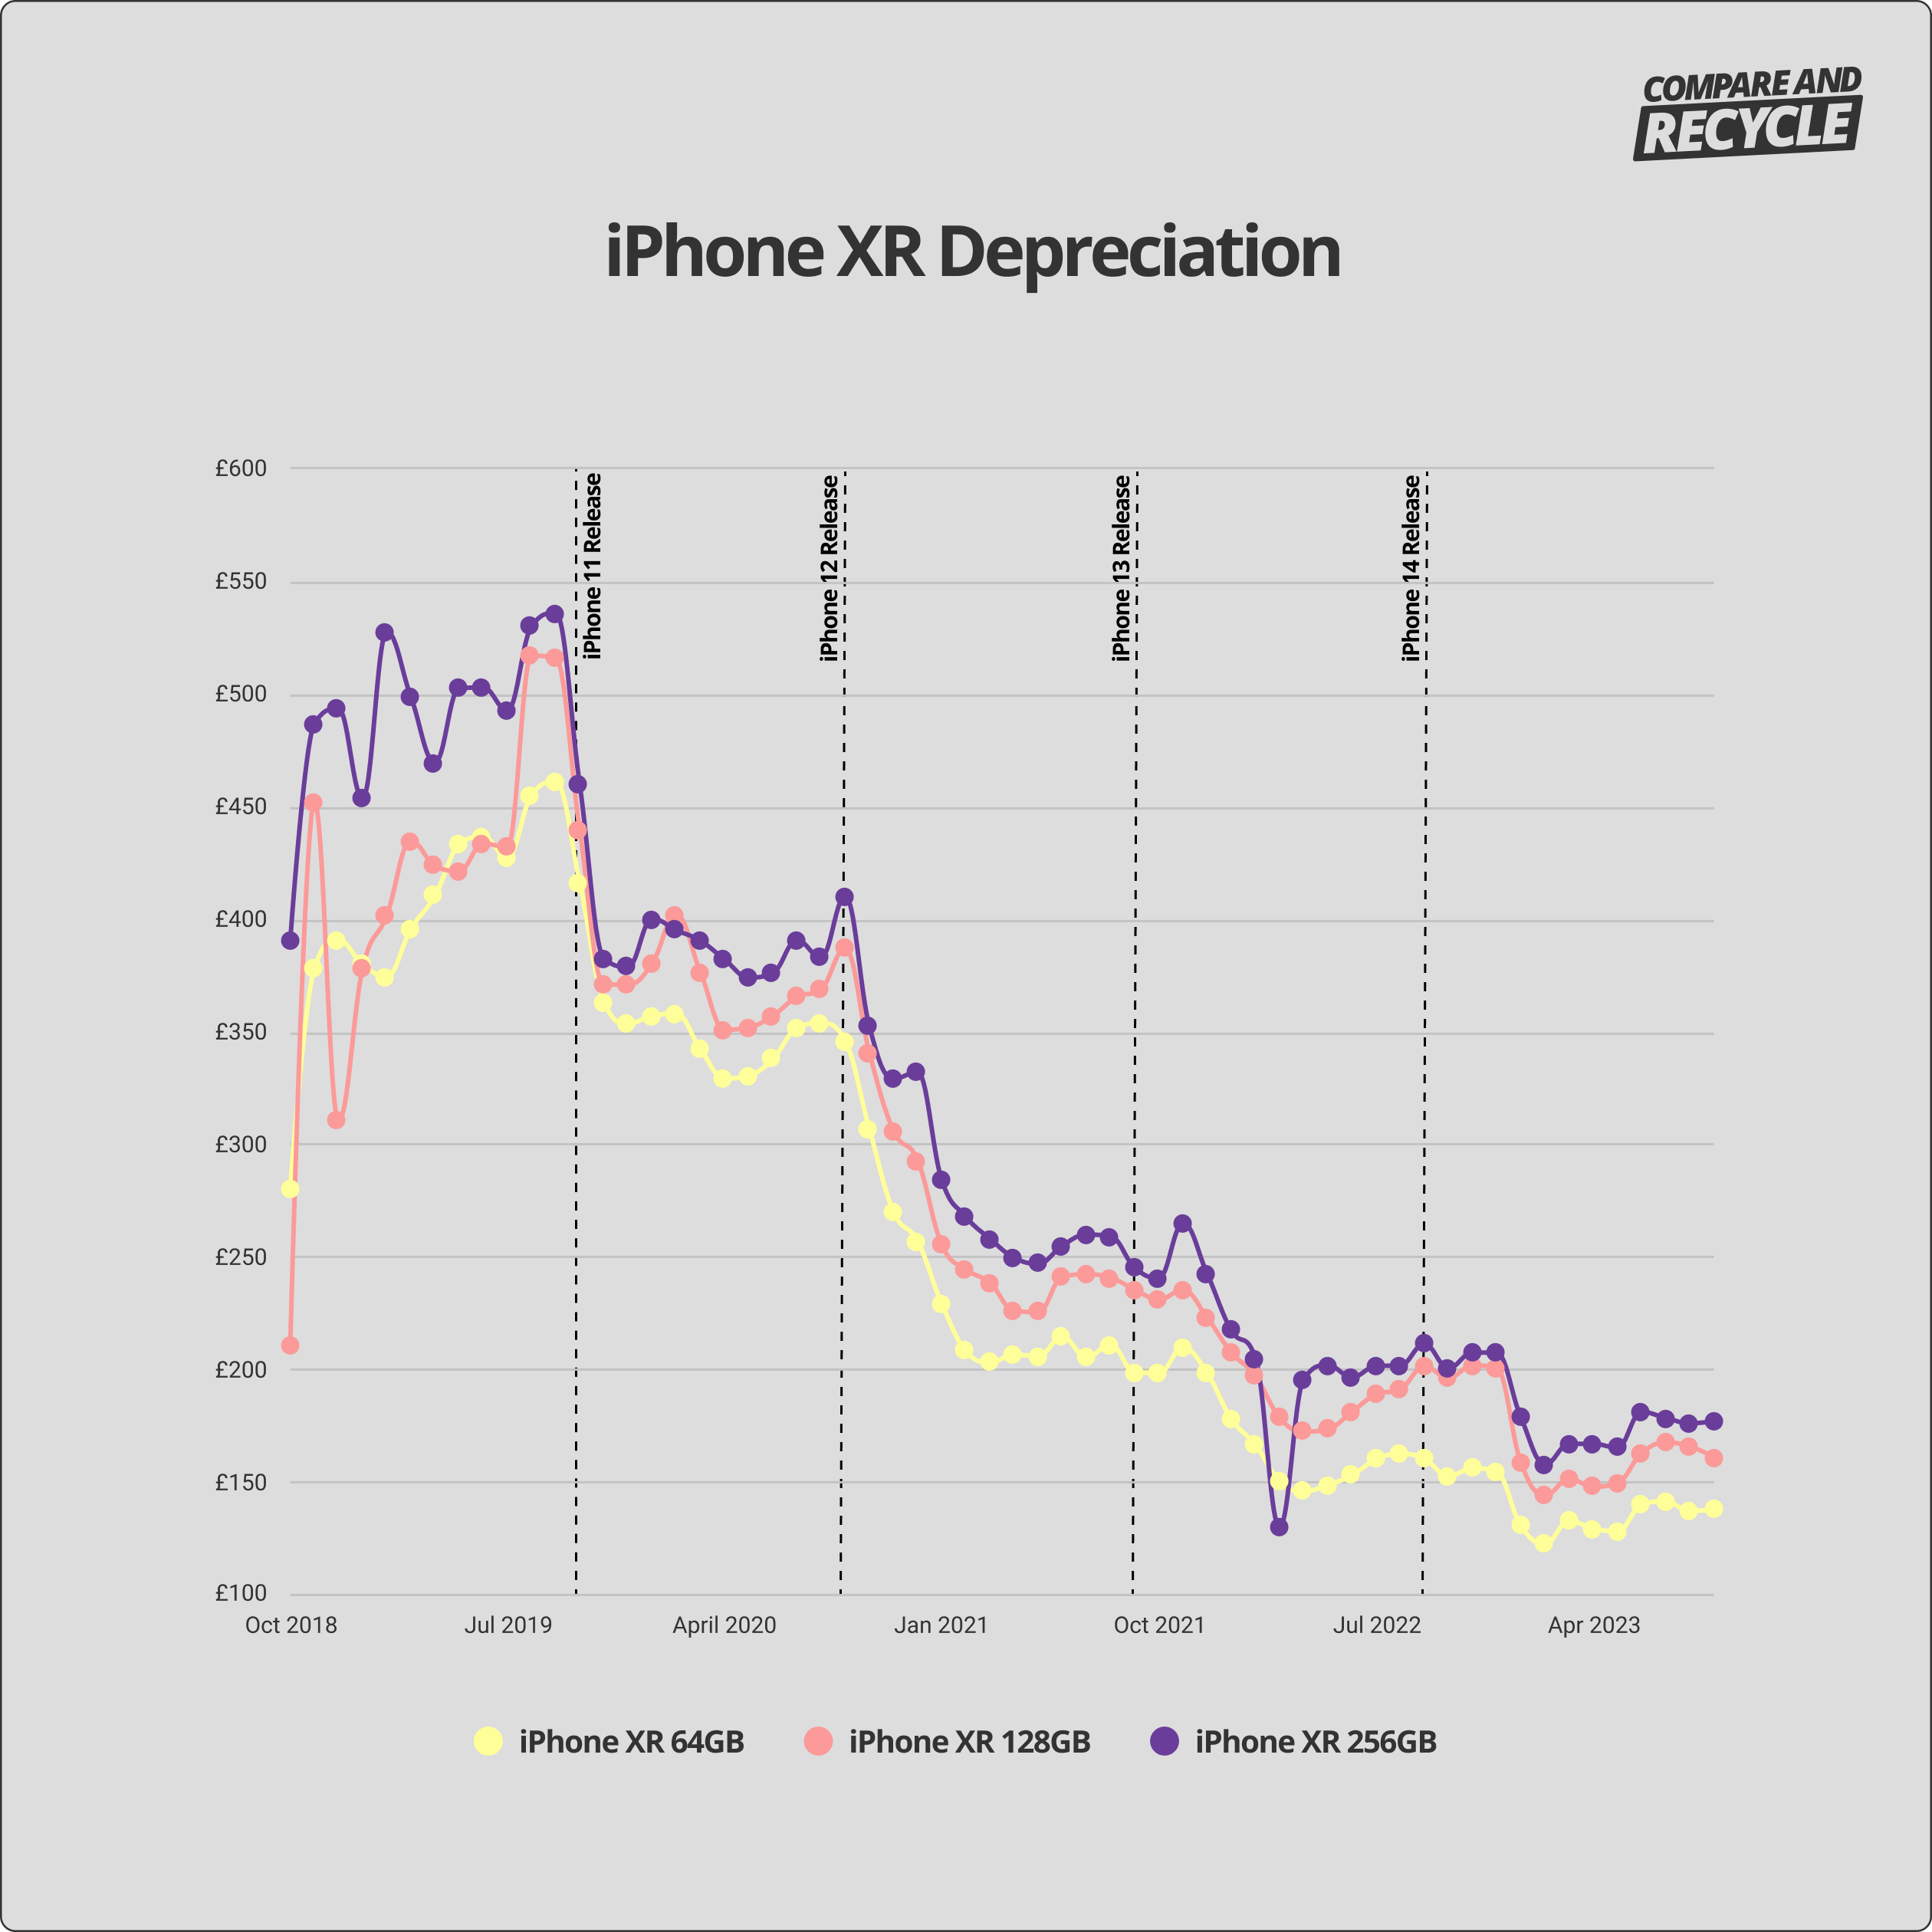 iPhone XR depreciation graph